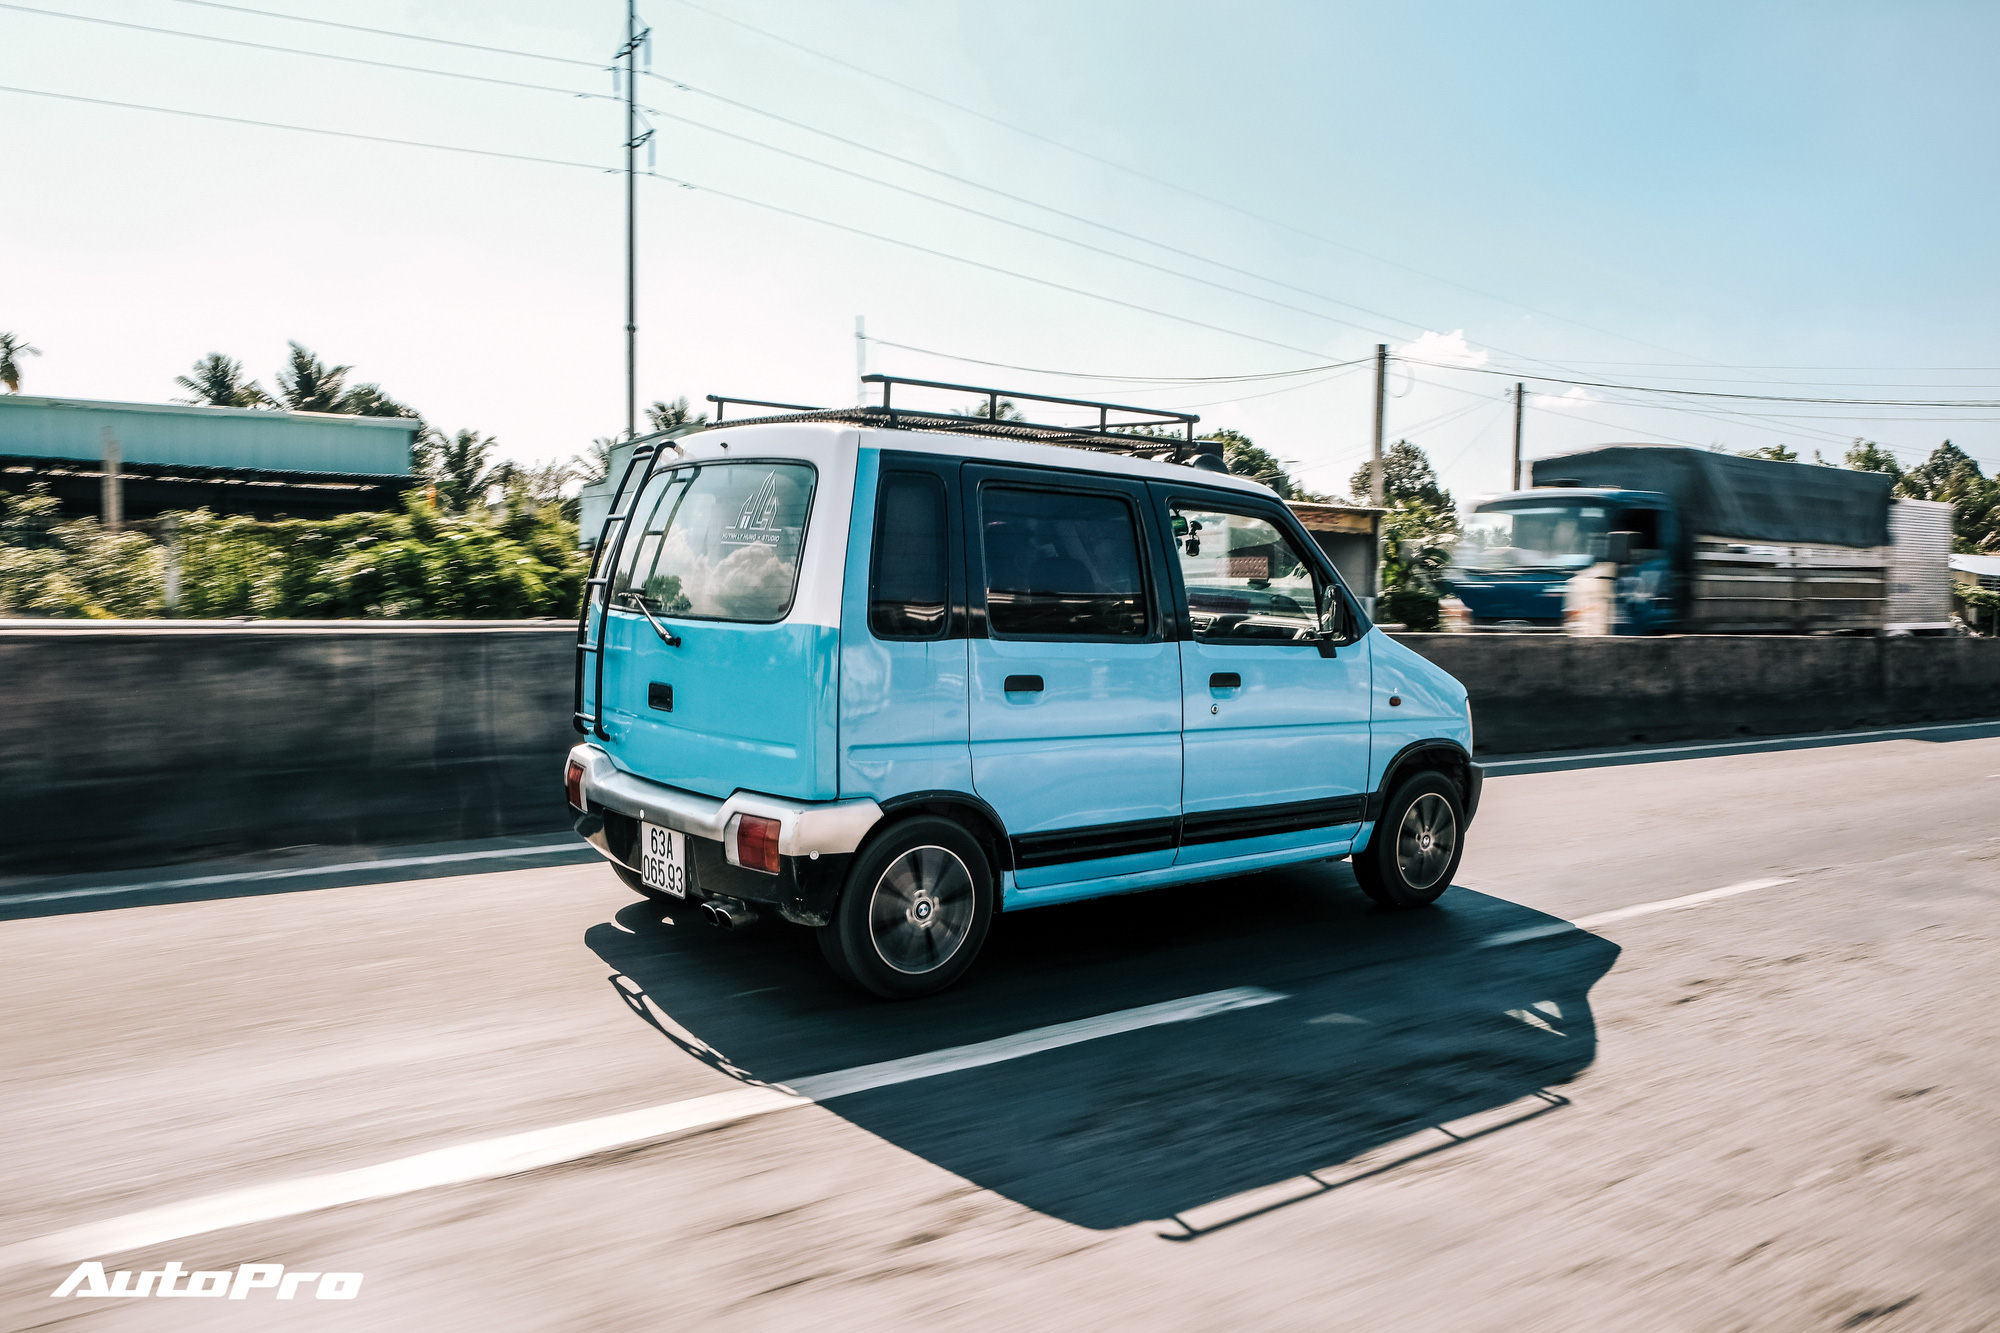 Gặp Người Mua Suzuki Wagon R Giá 90 Triệu Đồng Độ Thành Nhà Di Động: 'Việt  Nam Đẹp Lắm, Đi Tới Đâu Mà Ở Khách Sạn Thì Phí'